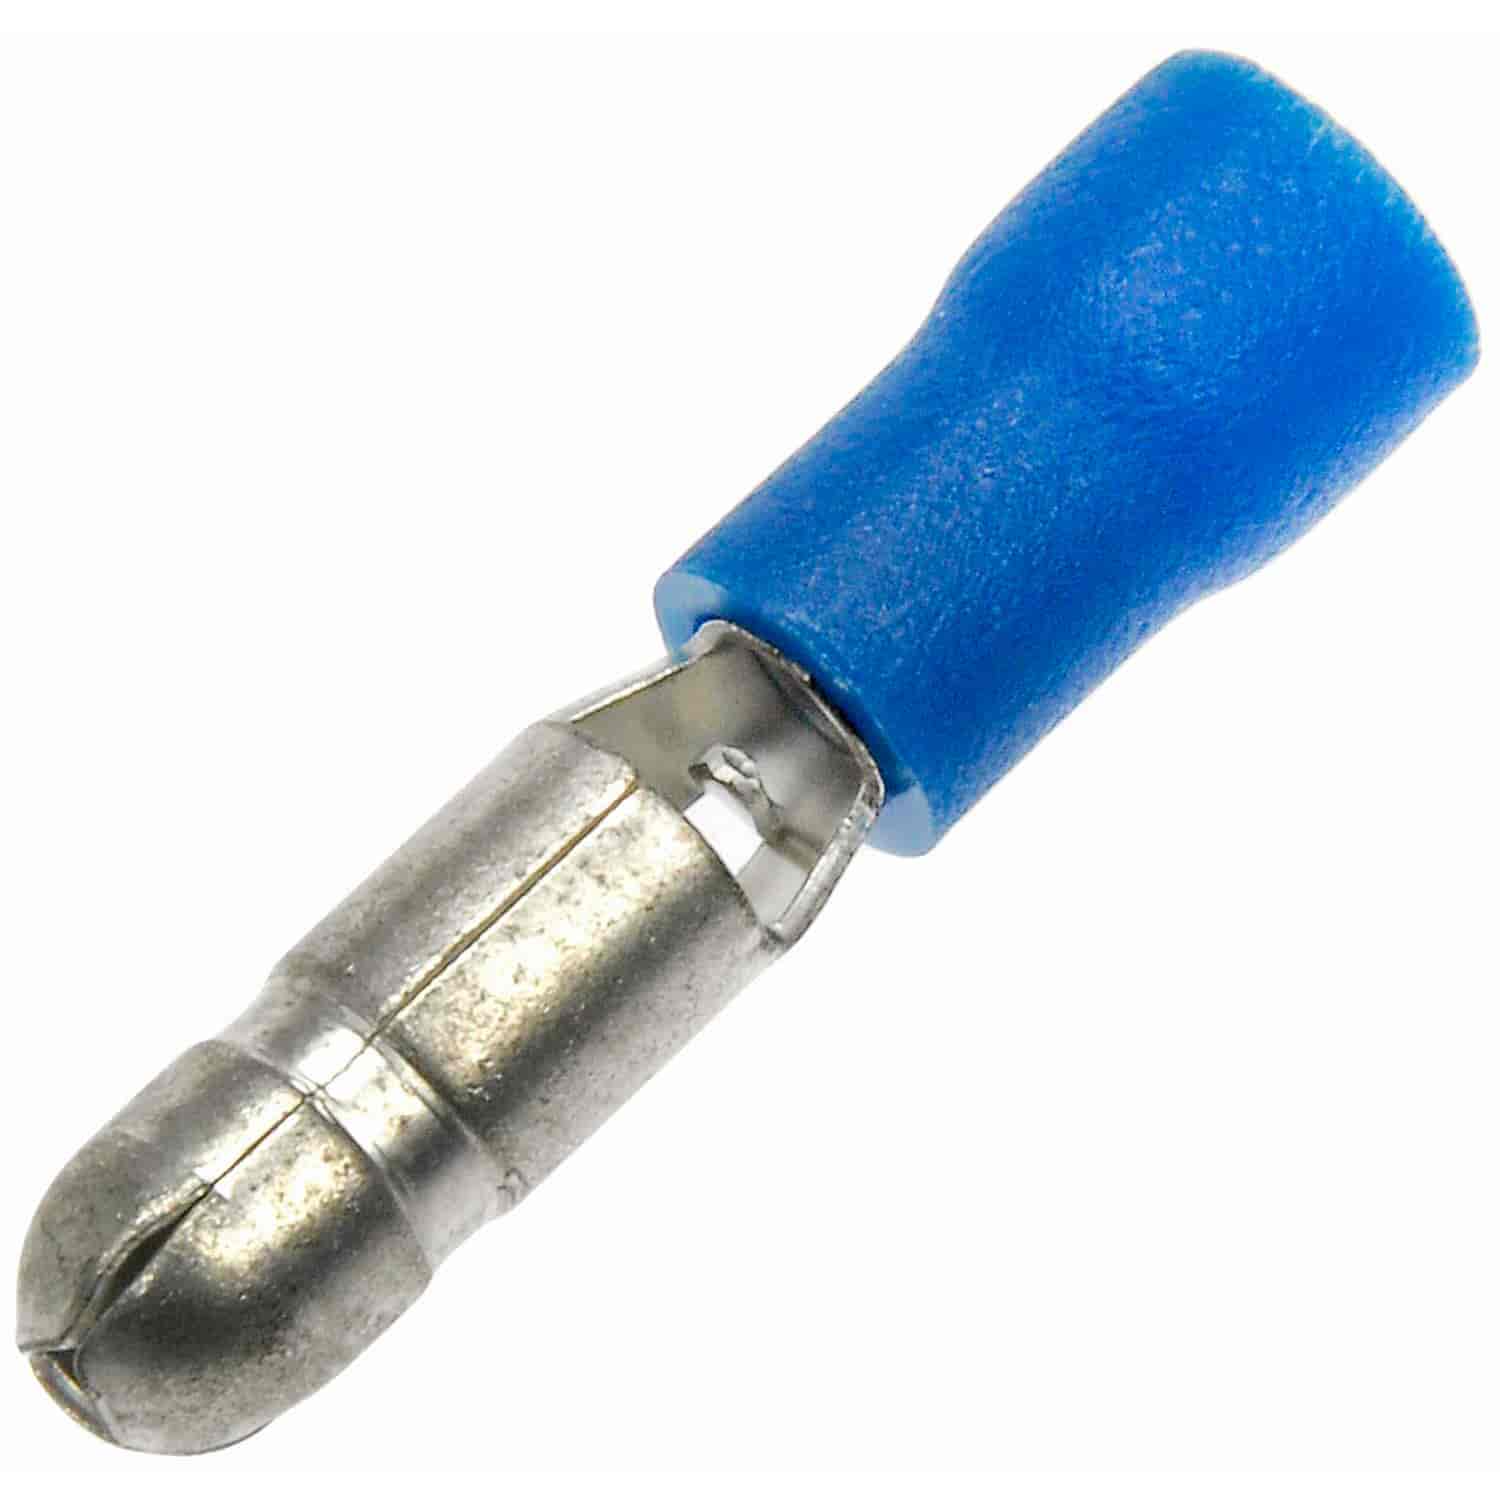 16-14 Gauge Male Bullet Terminal .176 In. Blue